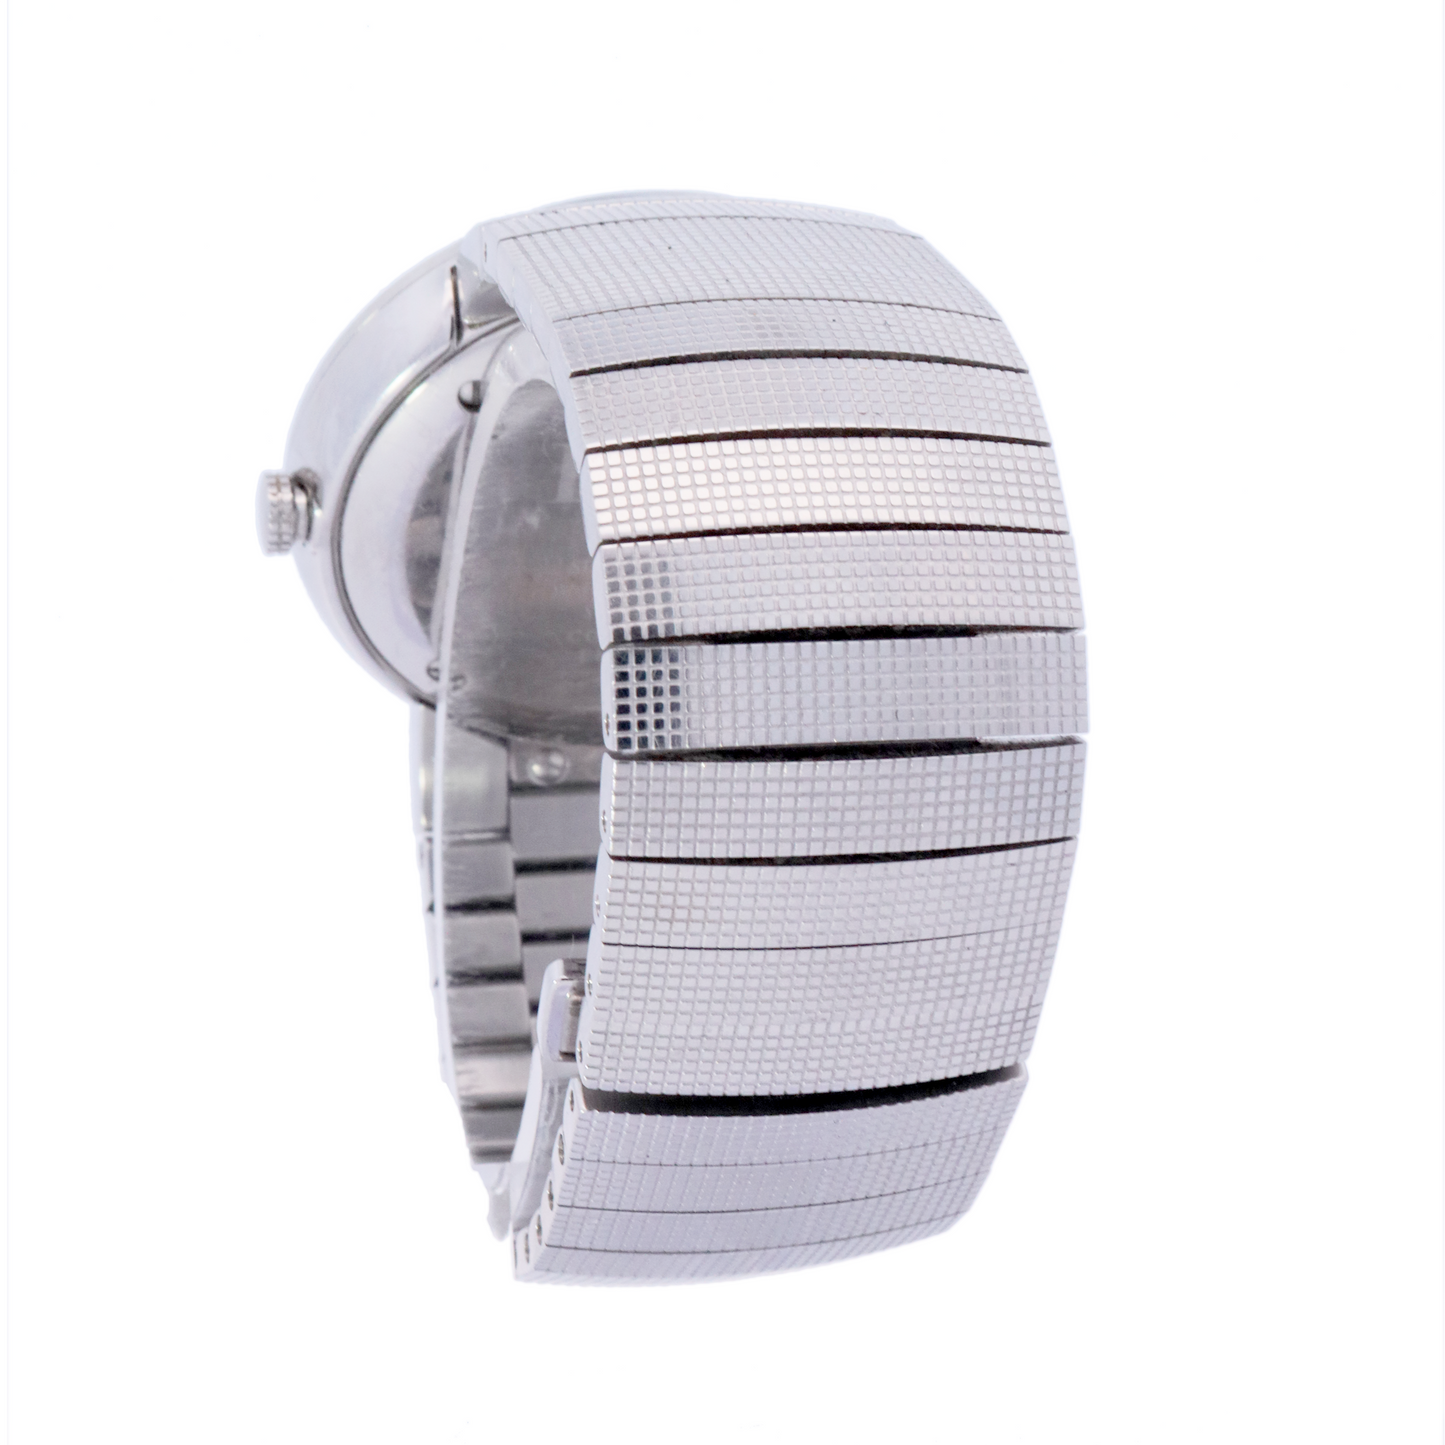 Dior Stainless Steel 34mm Diamond Dial Watch | Ref# DIORC0043111 - Happy Jewelers Fine Jewelry Lifetime Warranty